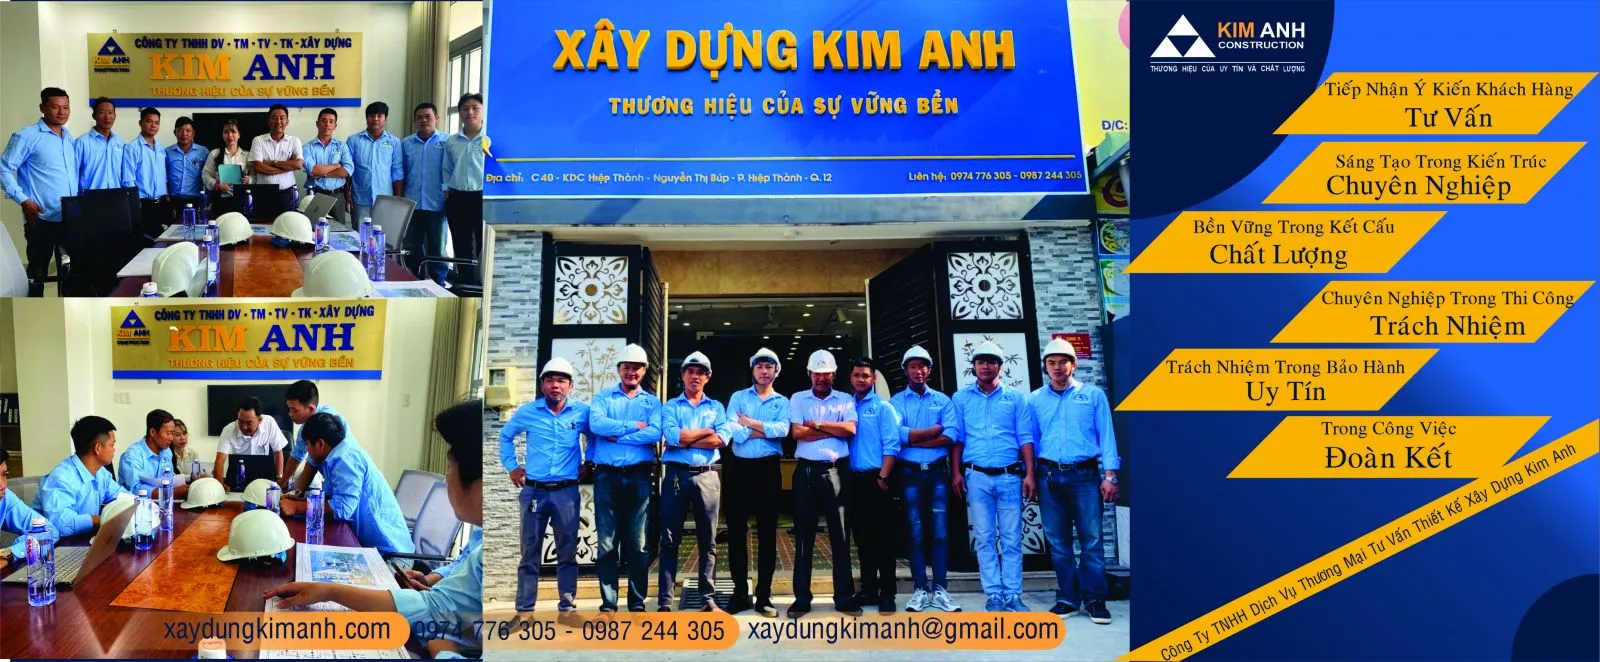 Thủ tục pháp lý cần chuẩn bị trước khi xây nhà-xaydungkimanh.com